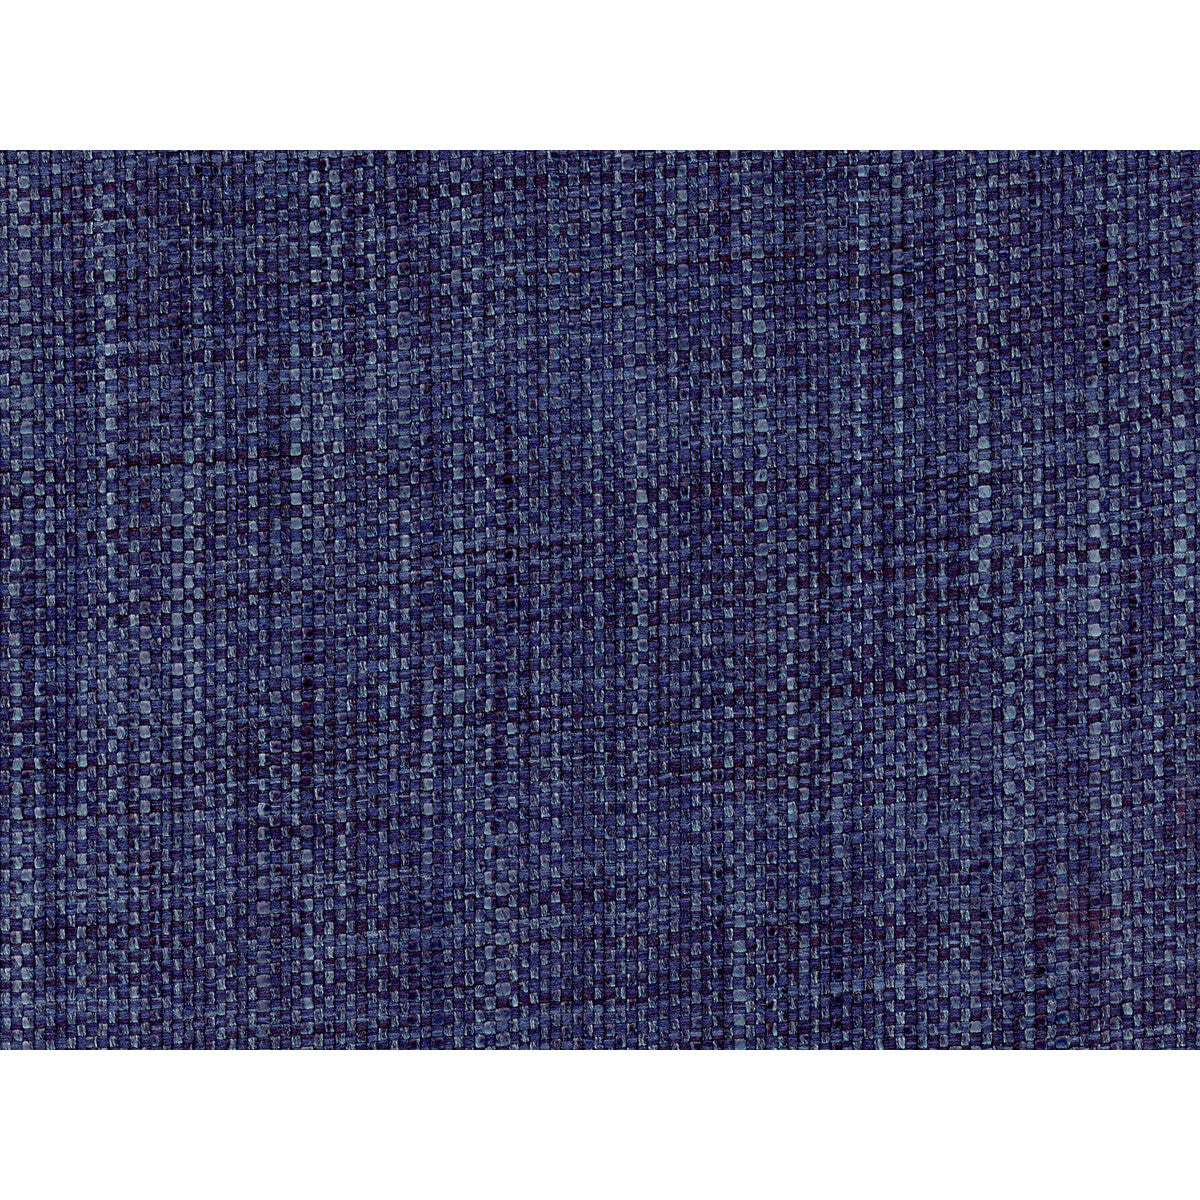 Kravet Basics fabric in 34404-50 color - pattern 34404.50.0 - by Kravet Basics